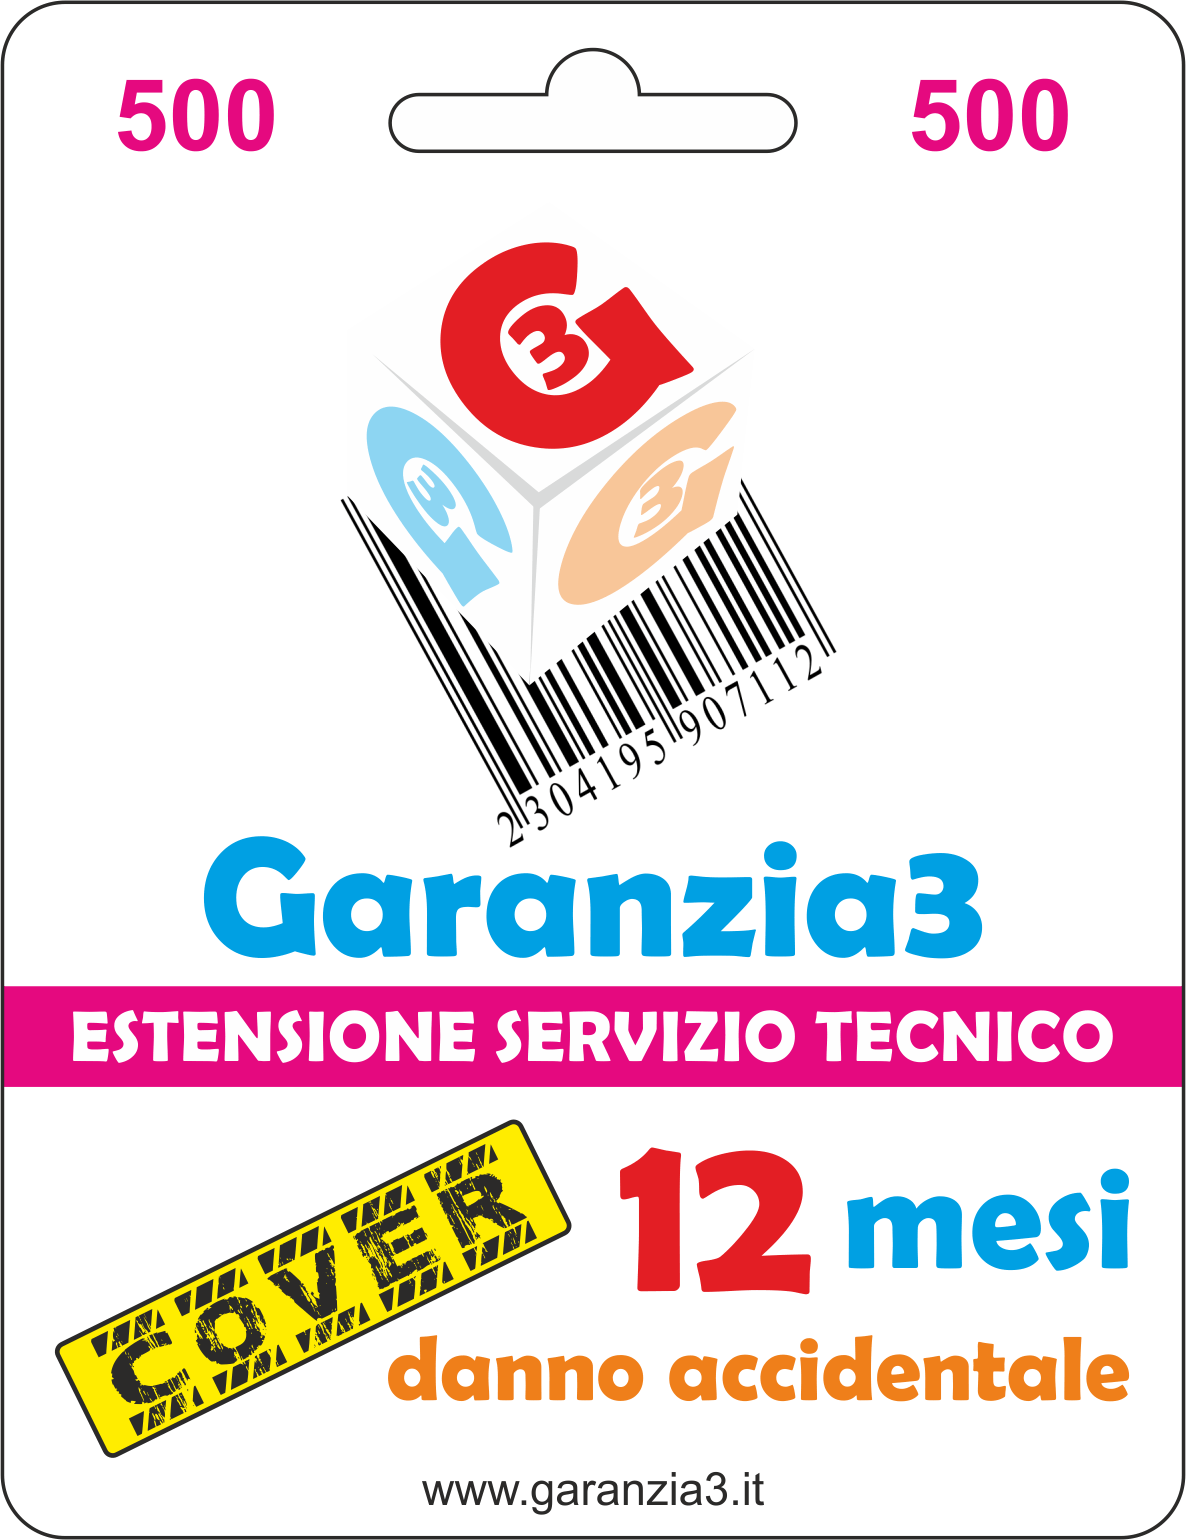 Garanzia3 Cover 500 - Dagimarket